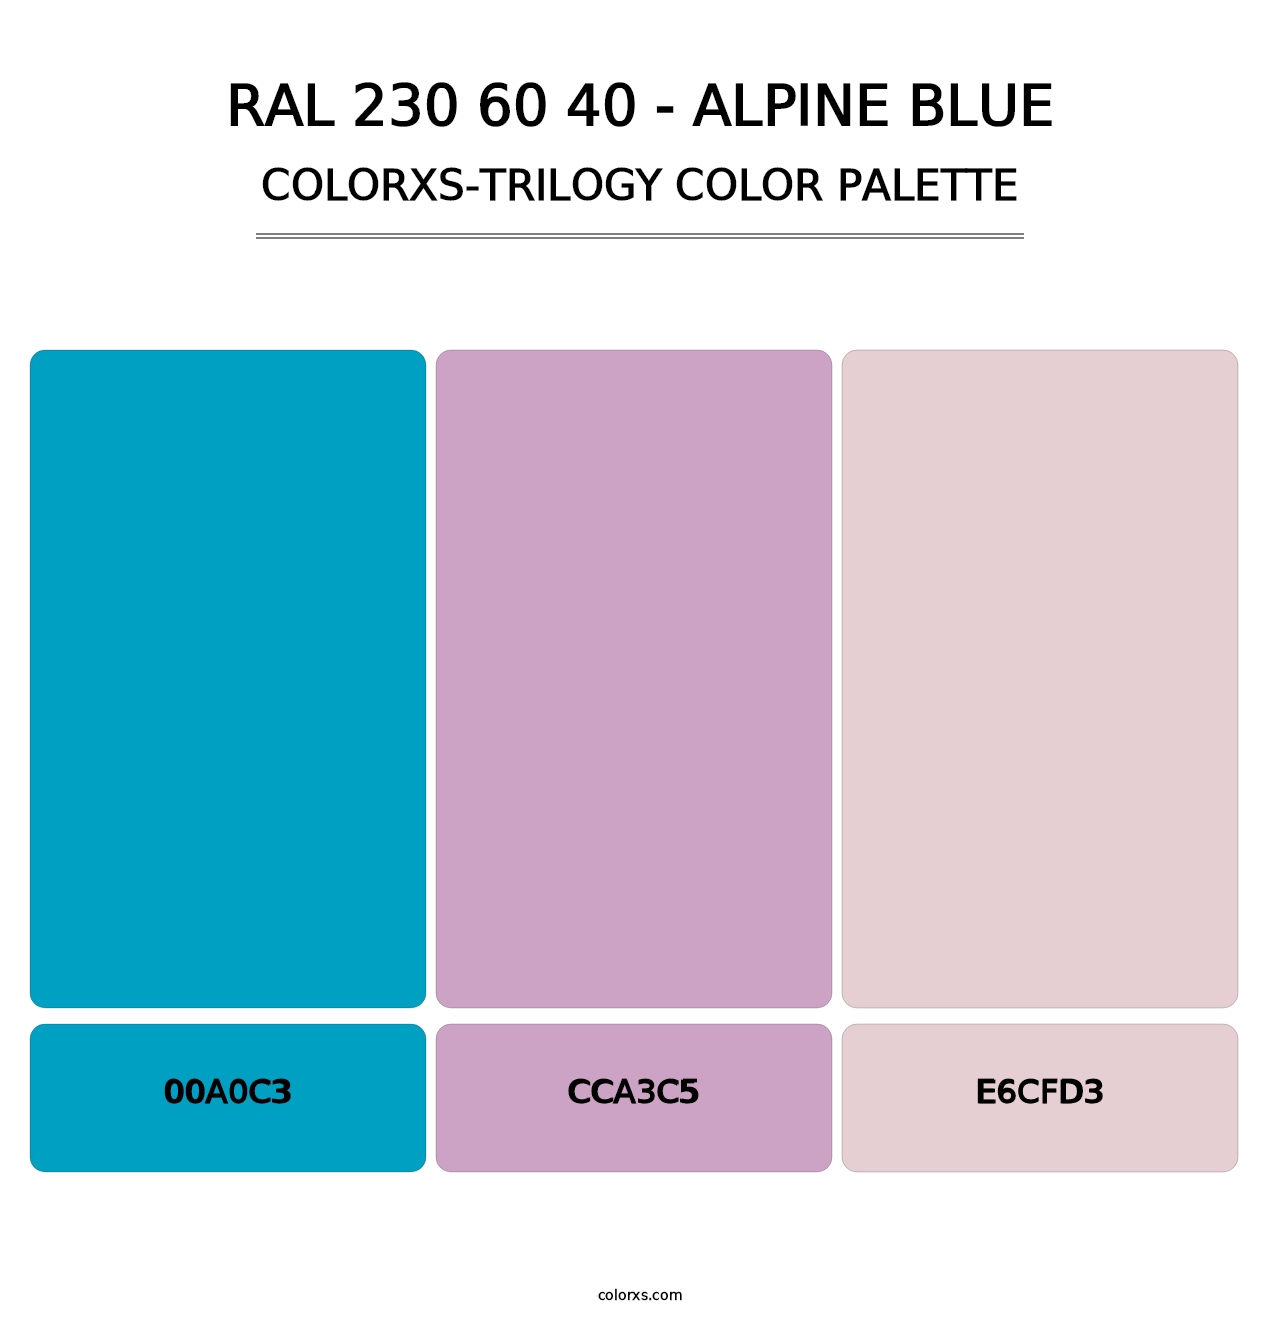 RAL 230 60 40 - Alpine Blue - Colorxs Trilogy Palette